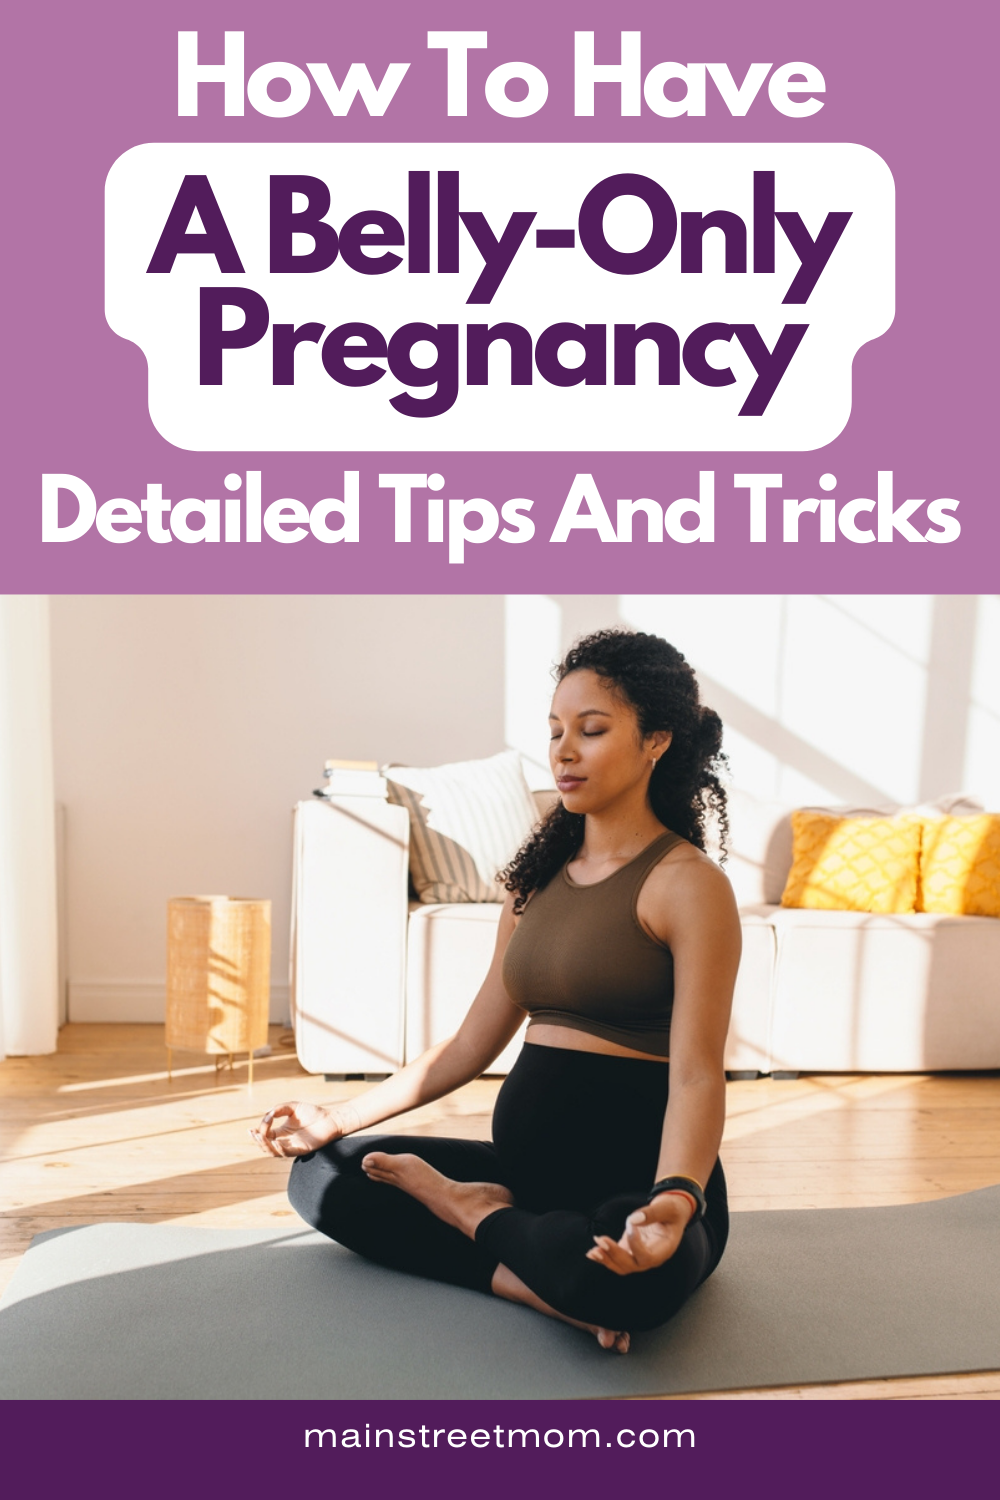 Wie man eine Bauch-zu-Bauch-Schwangerschaft bekommt: Ausführliche Tipps und Tricks